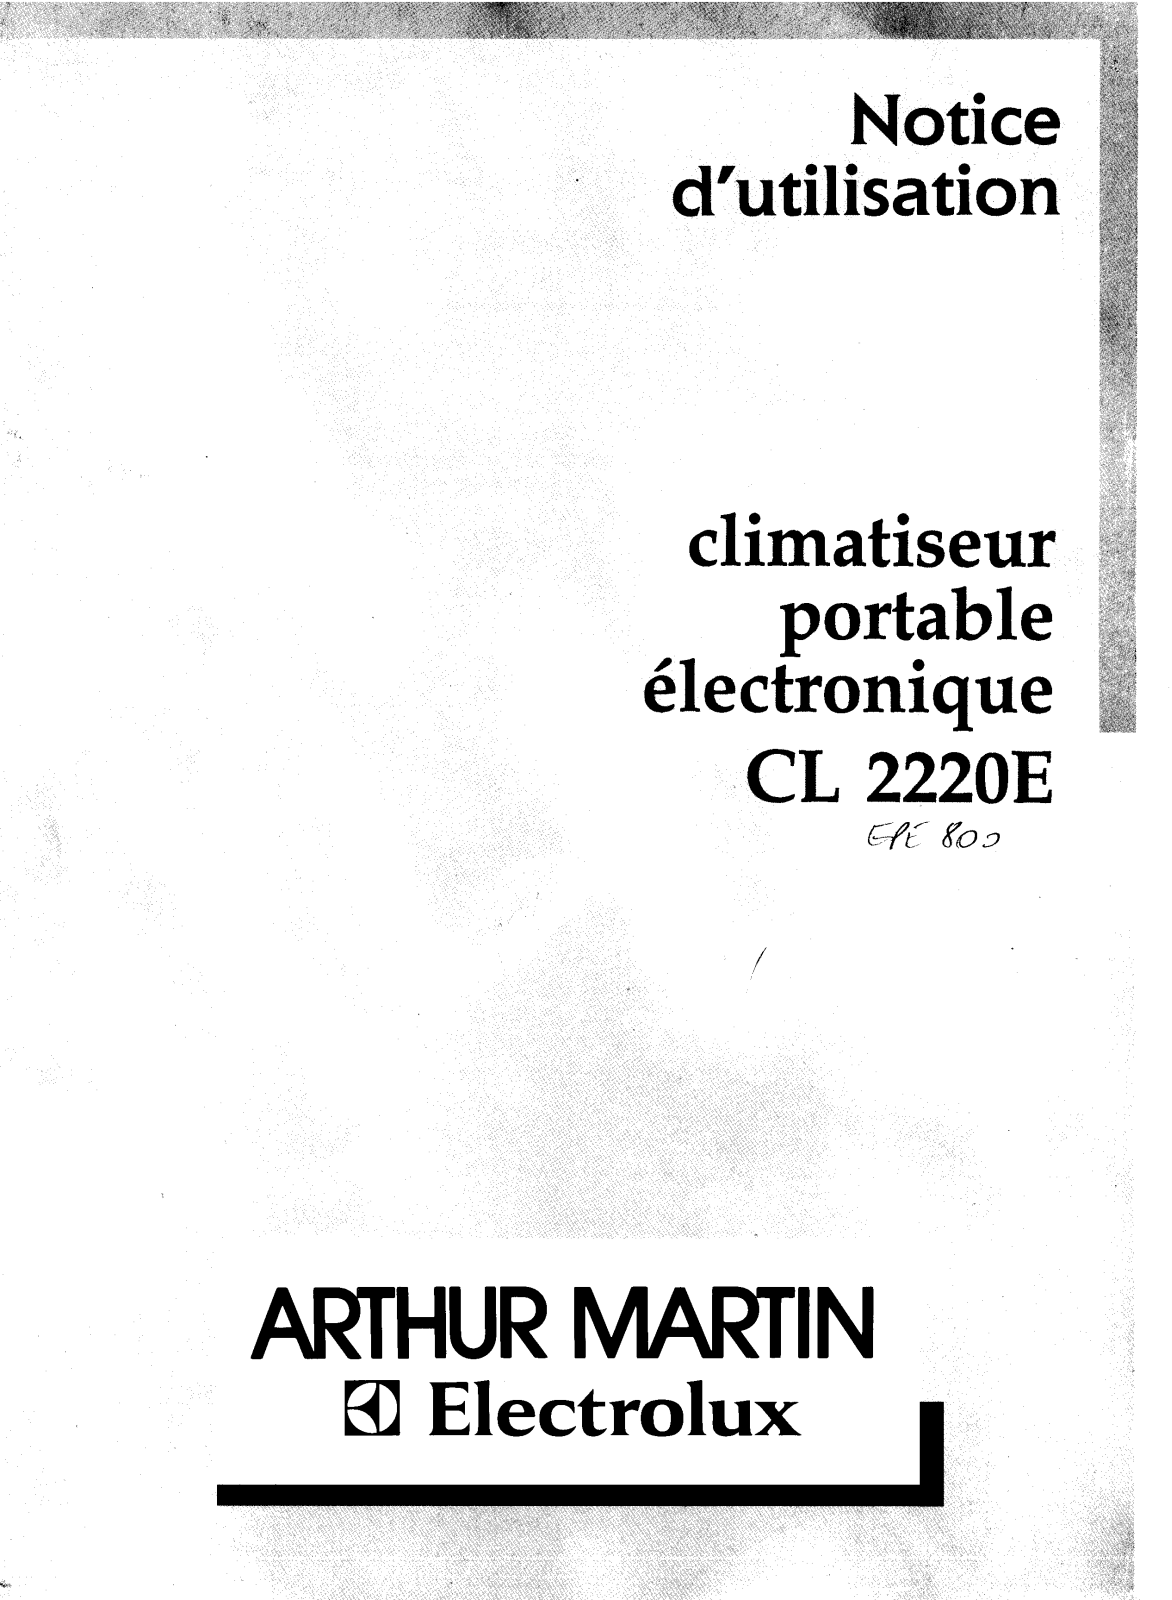 Arthur martin CL2220E User Manual